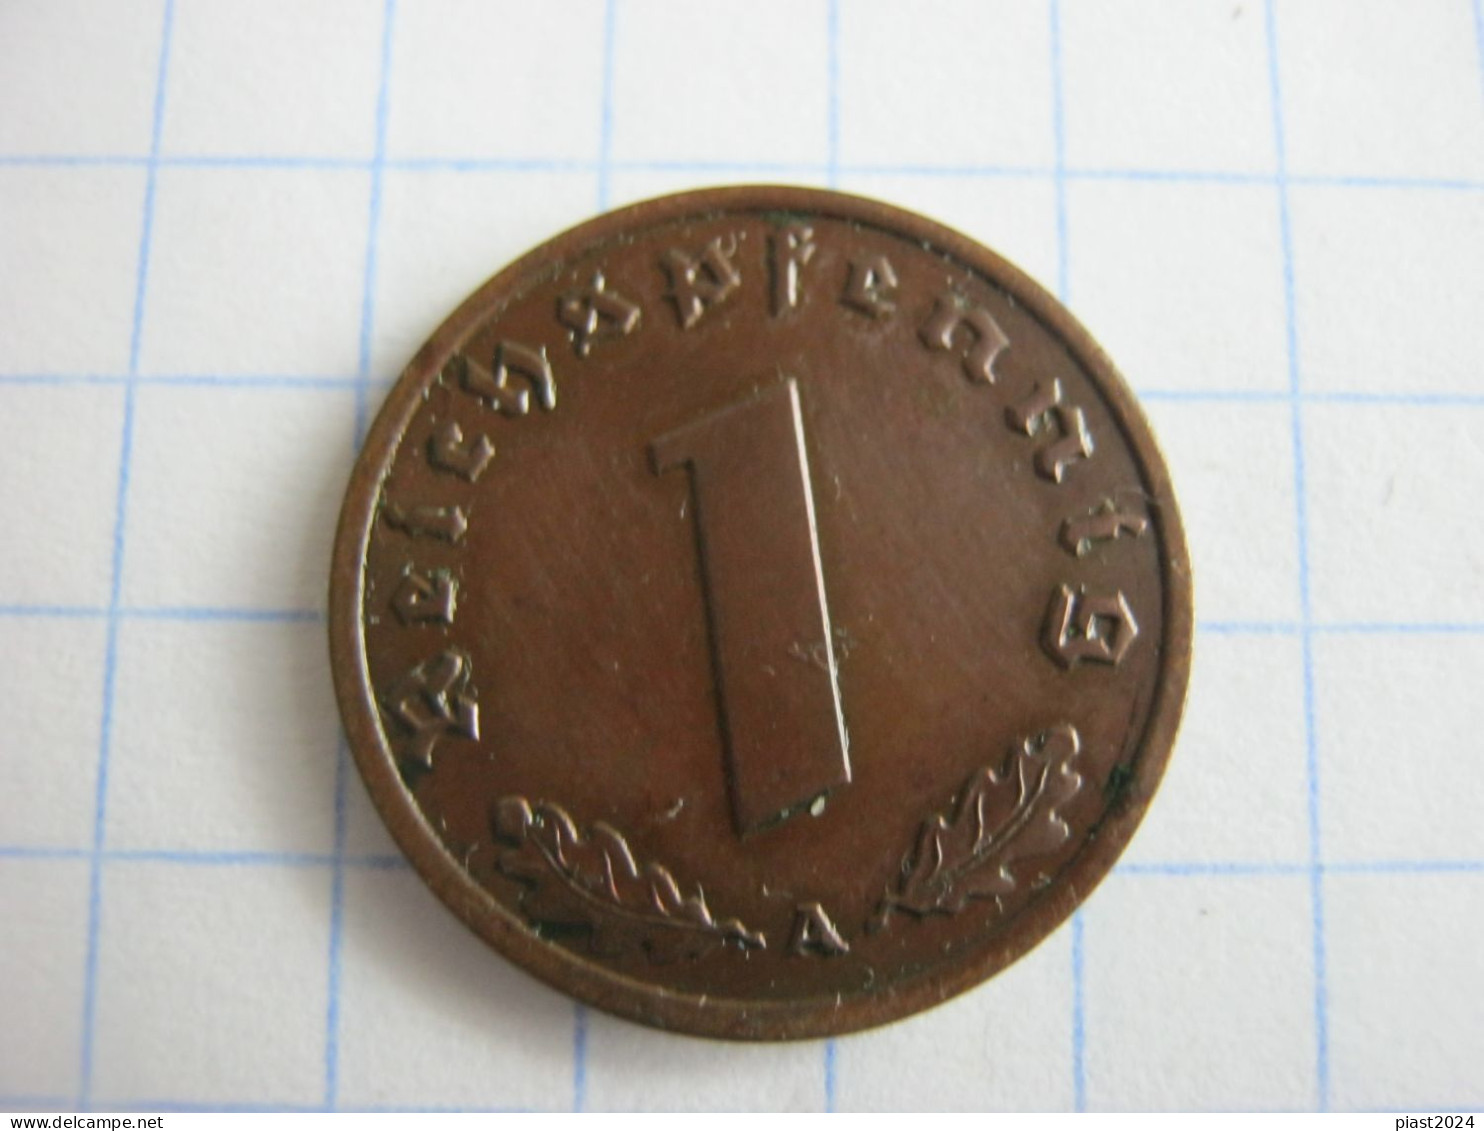 Germany 1 Reichspfennig 1940 A - 1 Reichspfennig